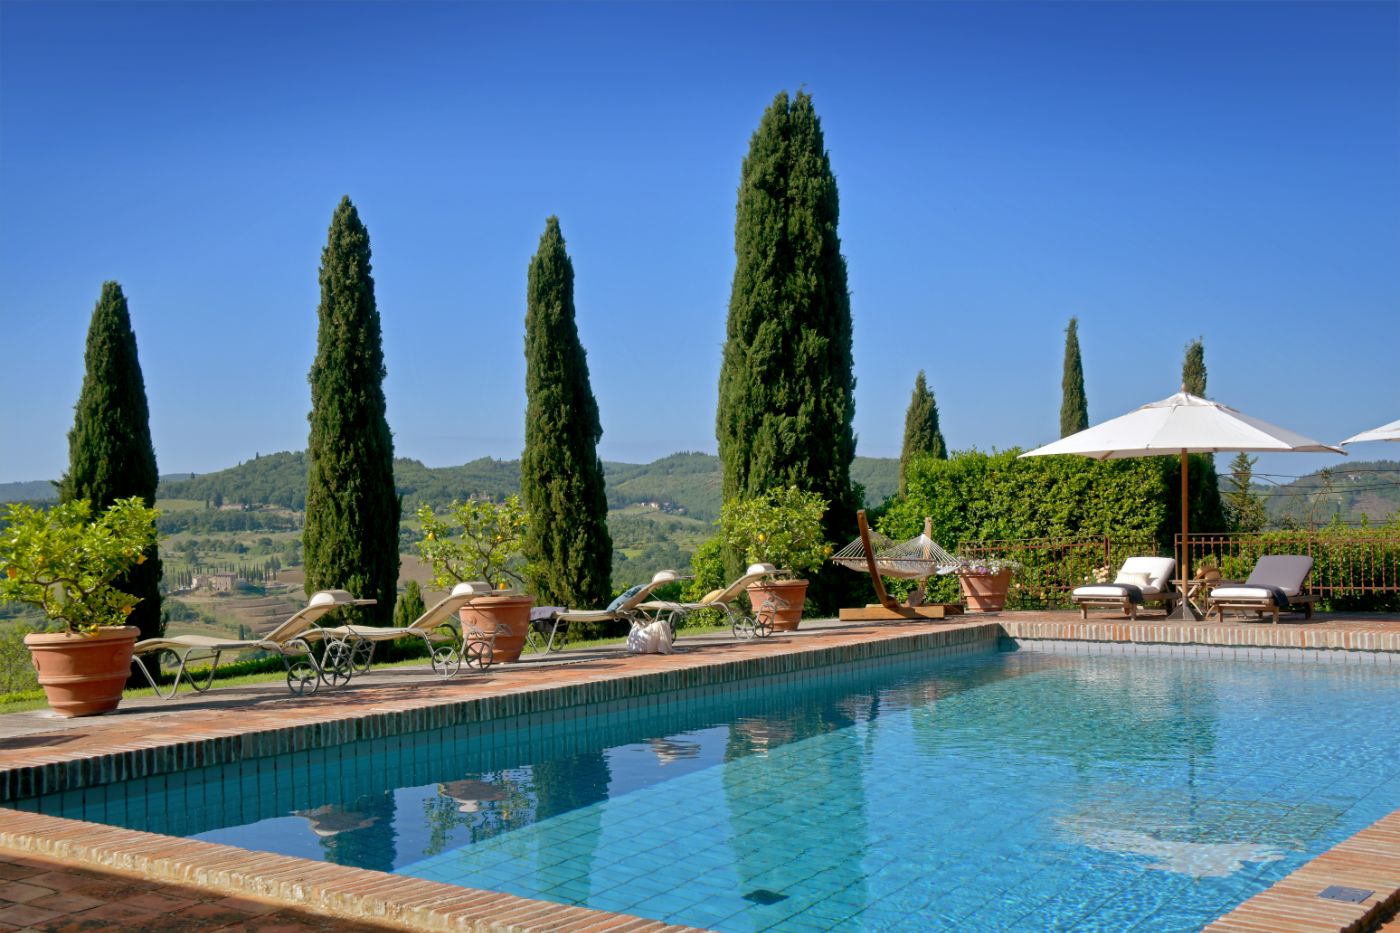 The swimming pool at Ca di Pesa.